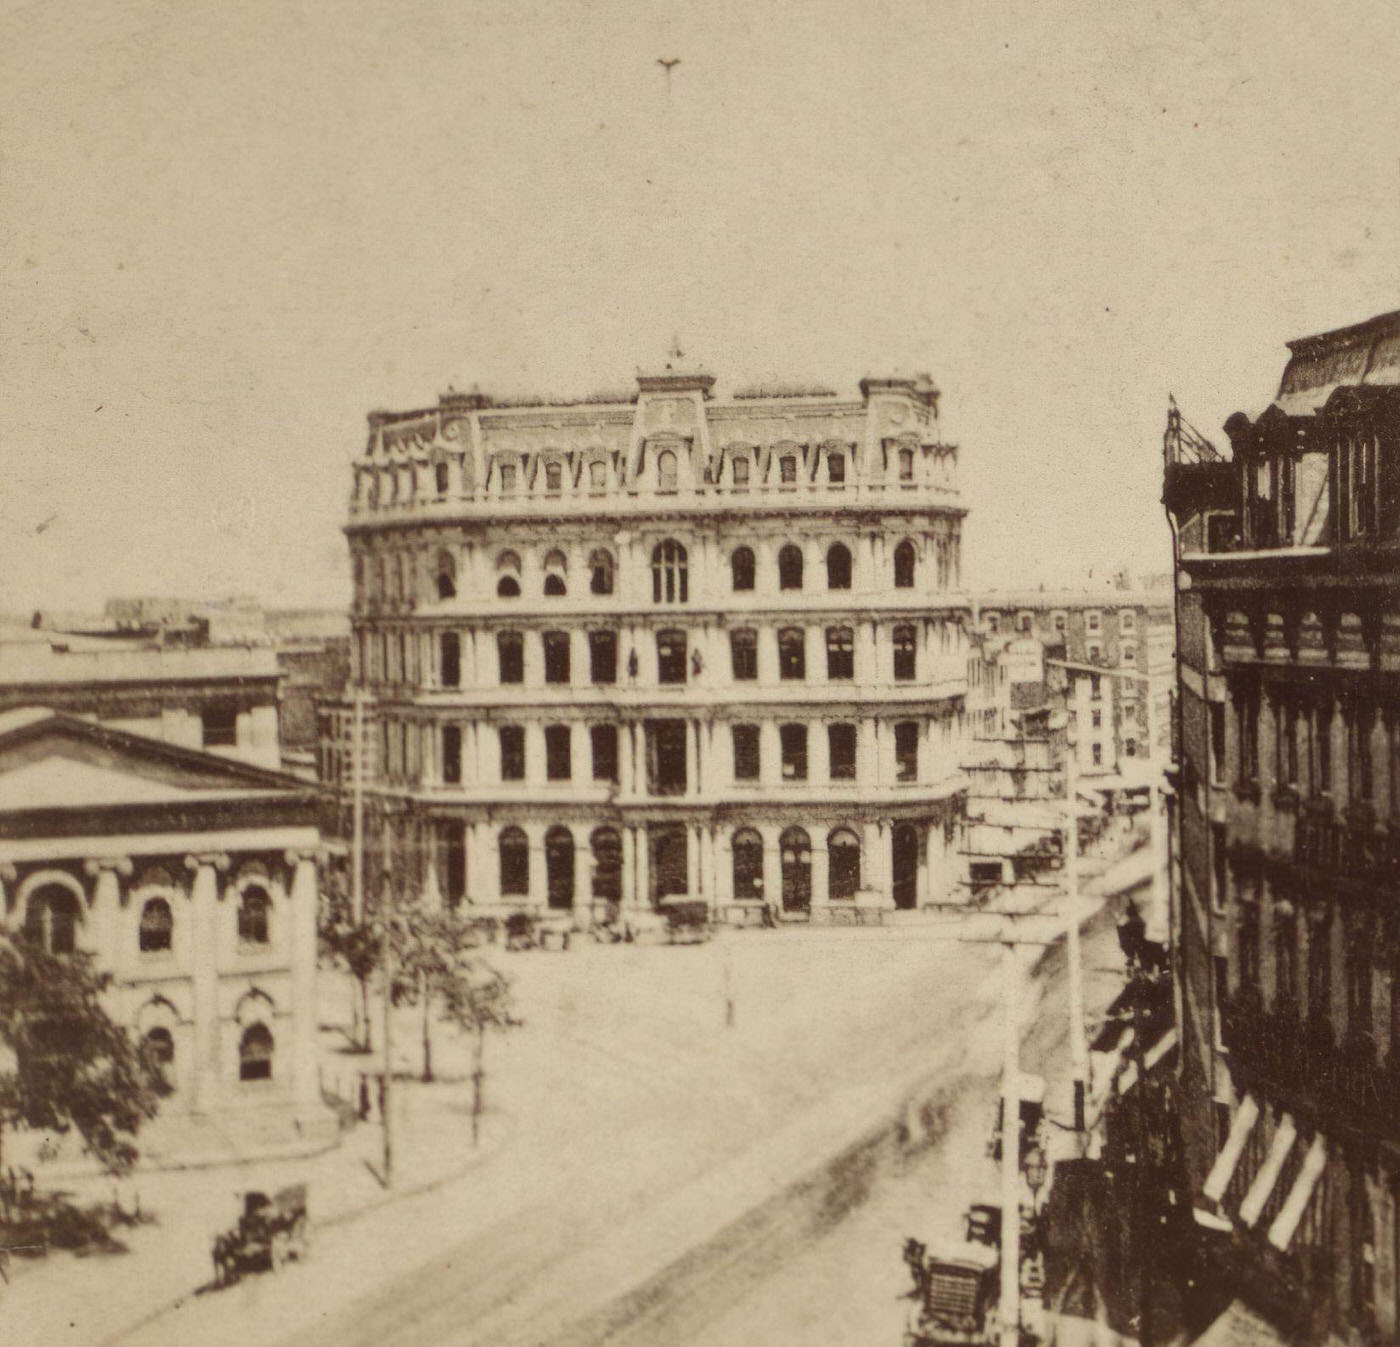 Staats Zeitung Building, Manhattan, 1880